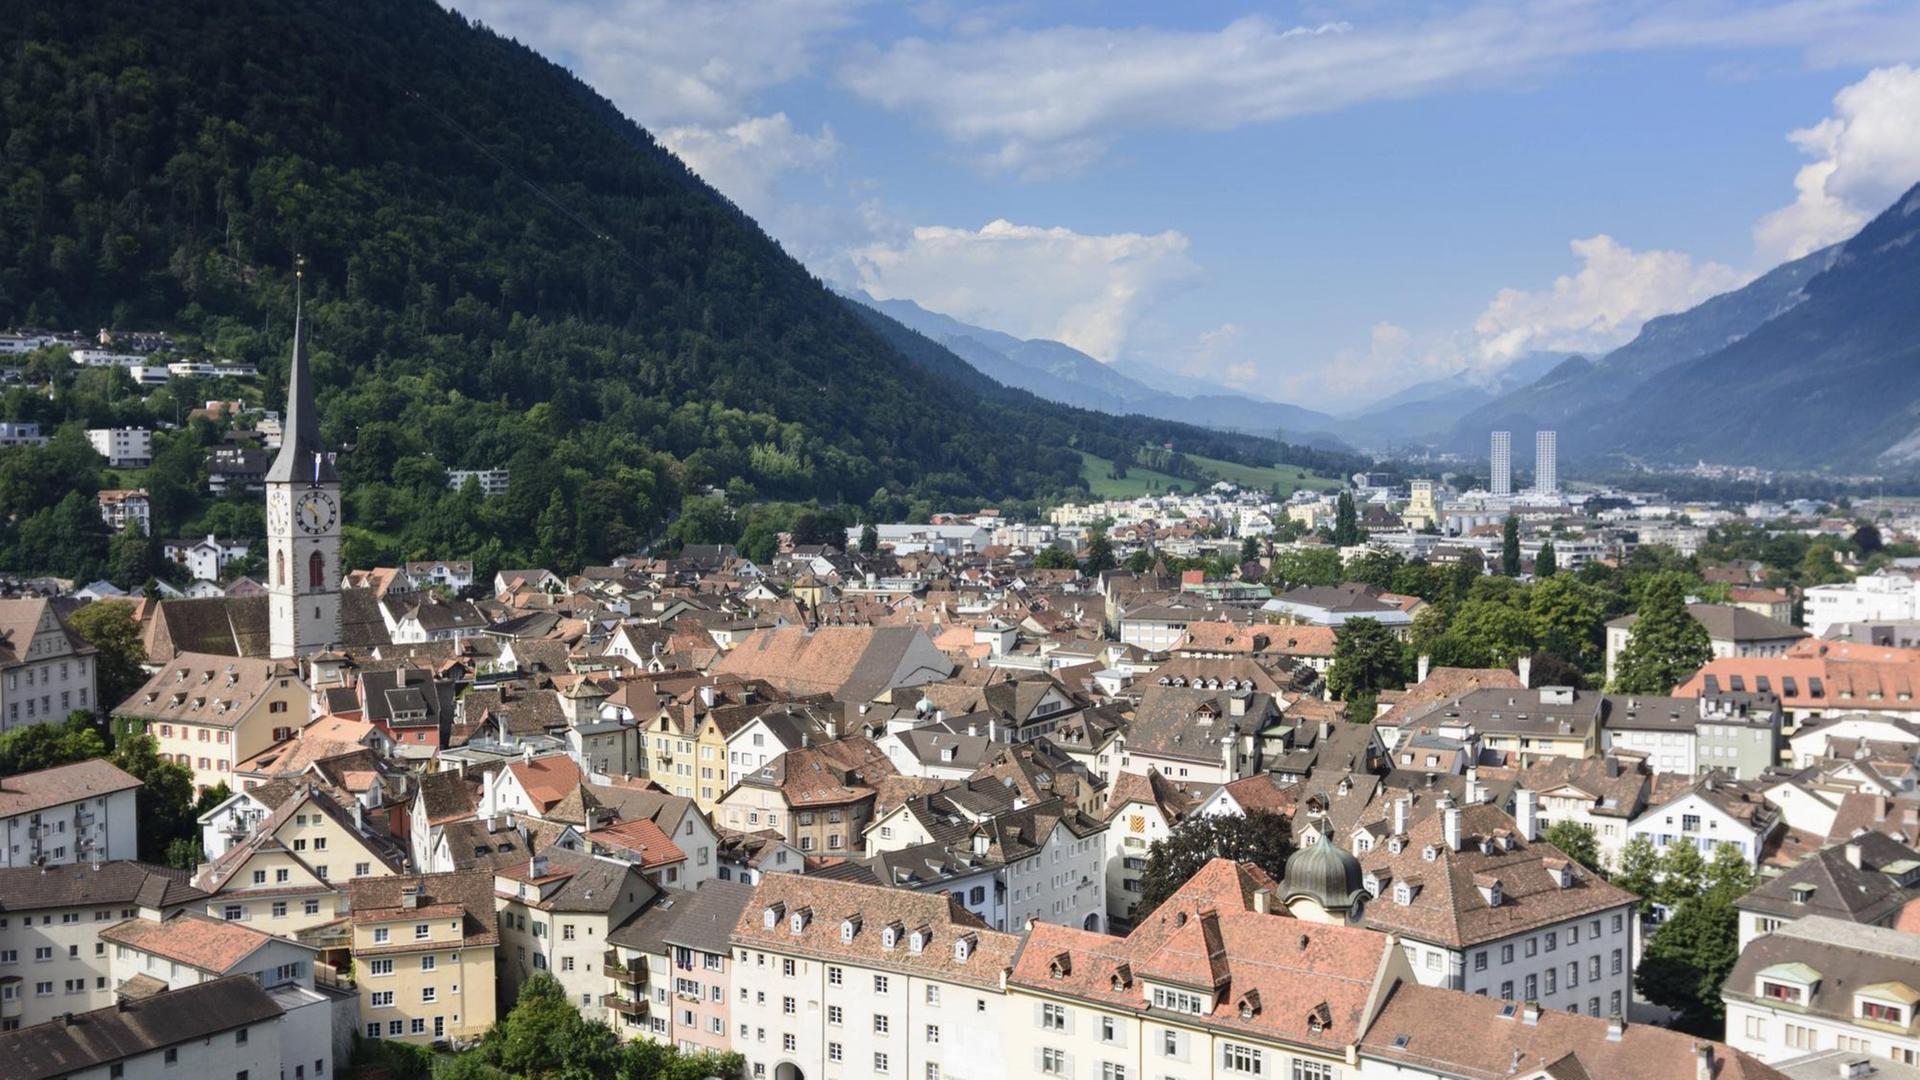 Blick auf die Altstadt in Chur, Schweiz, Kanton Graubünden.